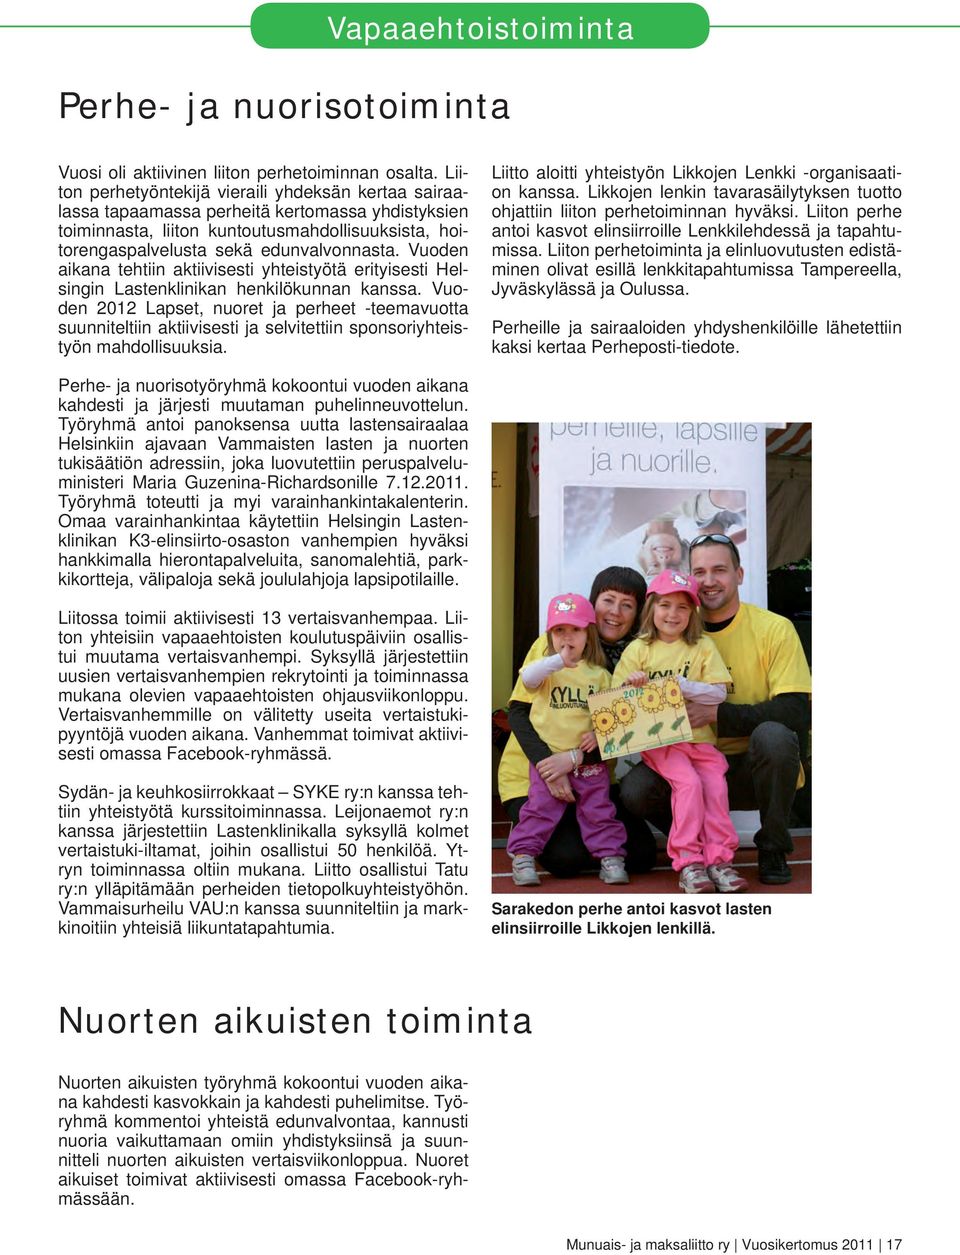 Vuoden aikana tehtiin aktiivisesti yhteistyötä erityisesti Helsingin Lastenklinikan henkilökunnan kanssa.